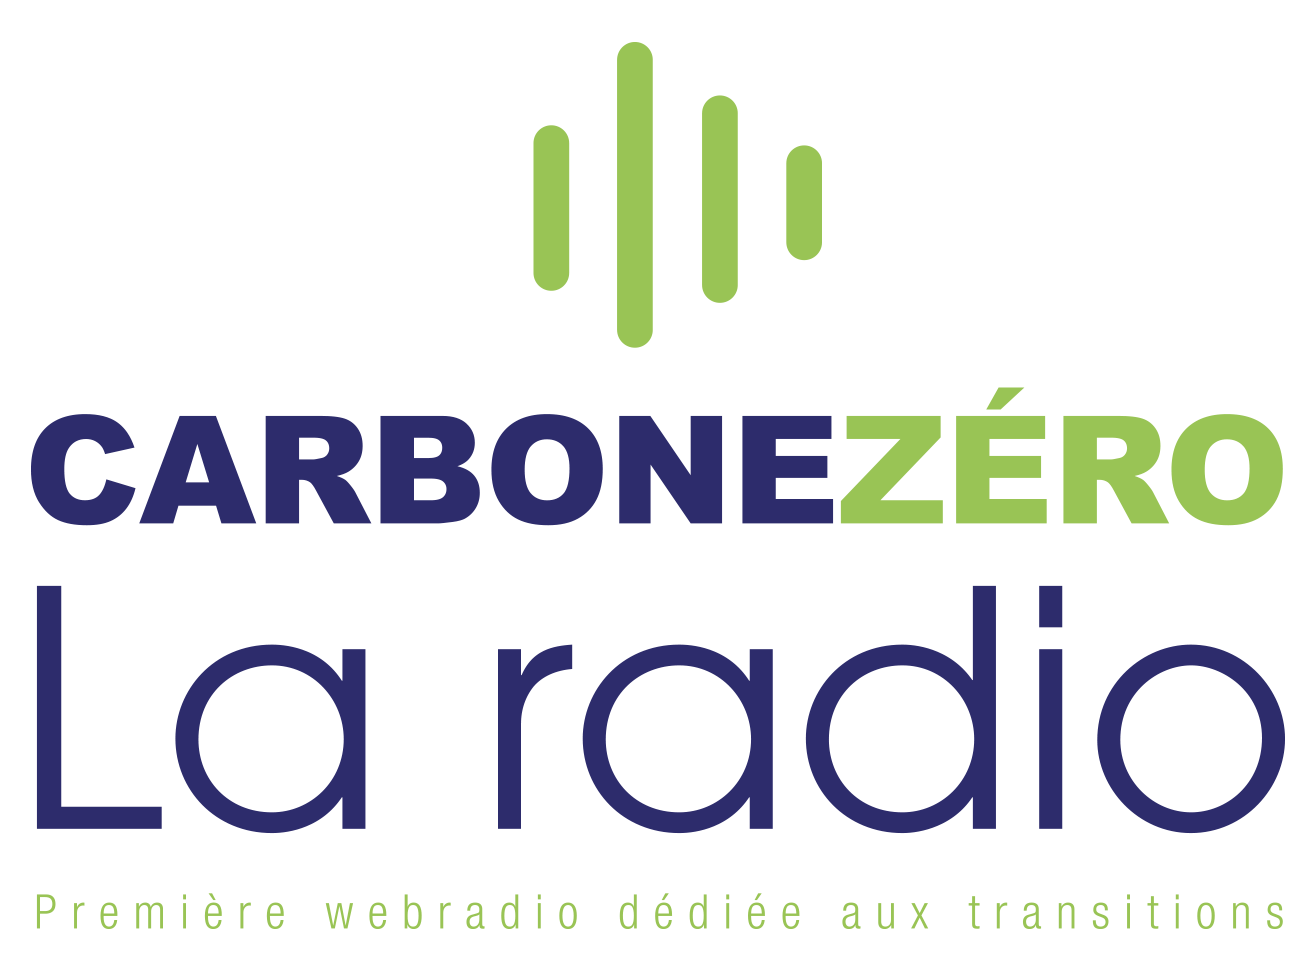 Carbone zero la radio